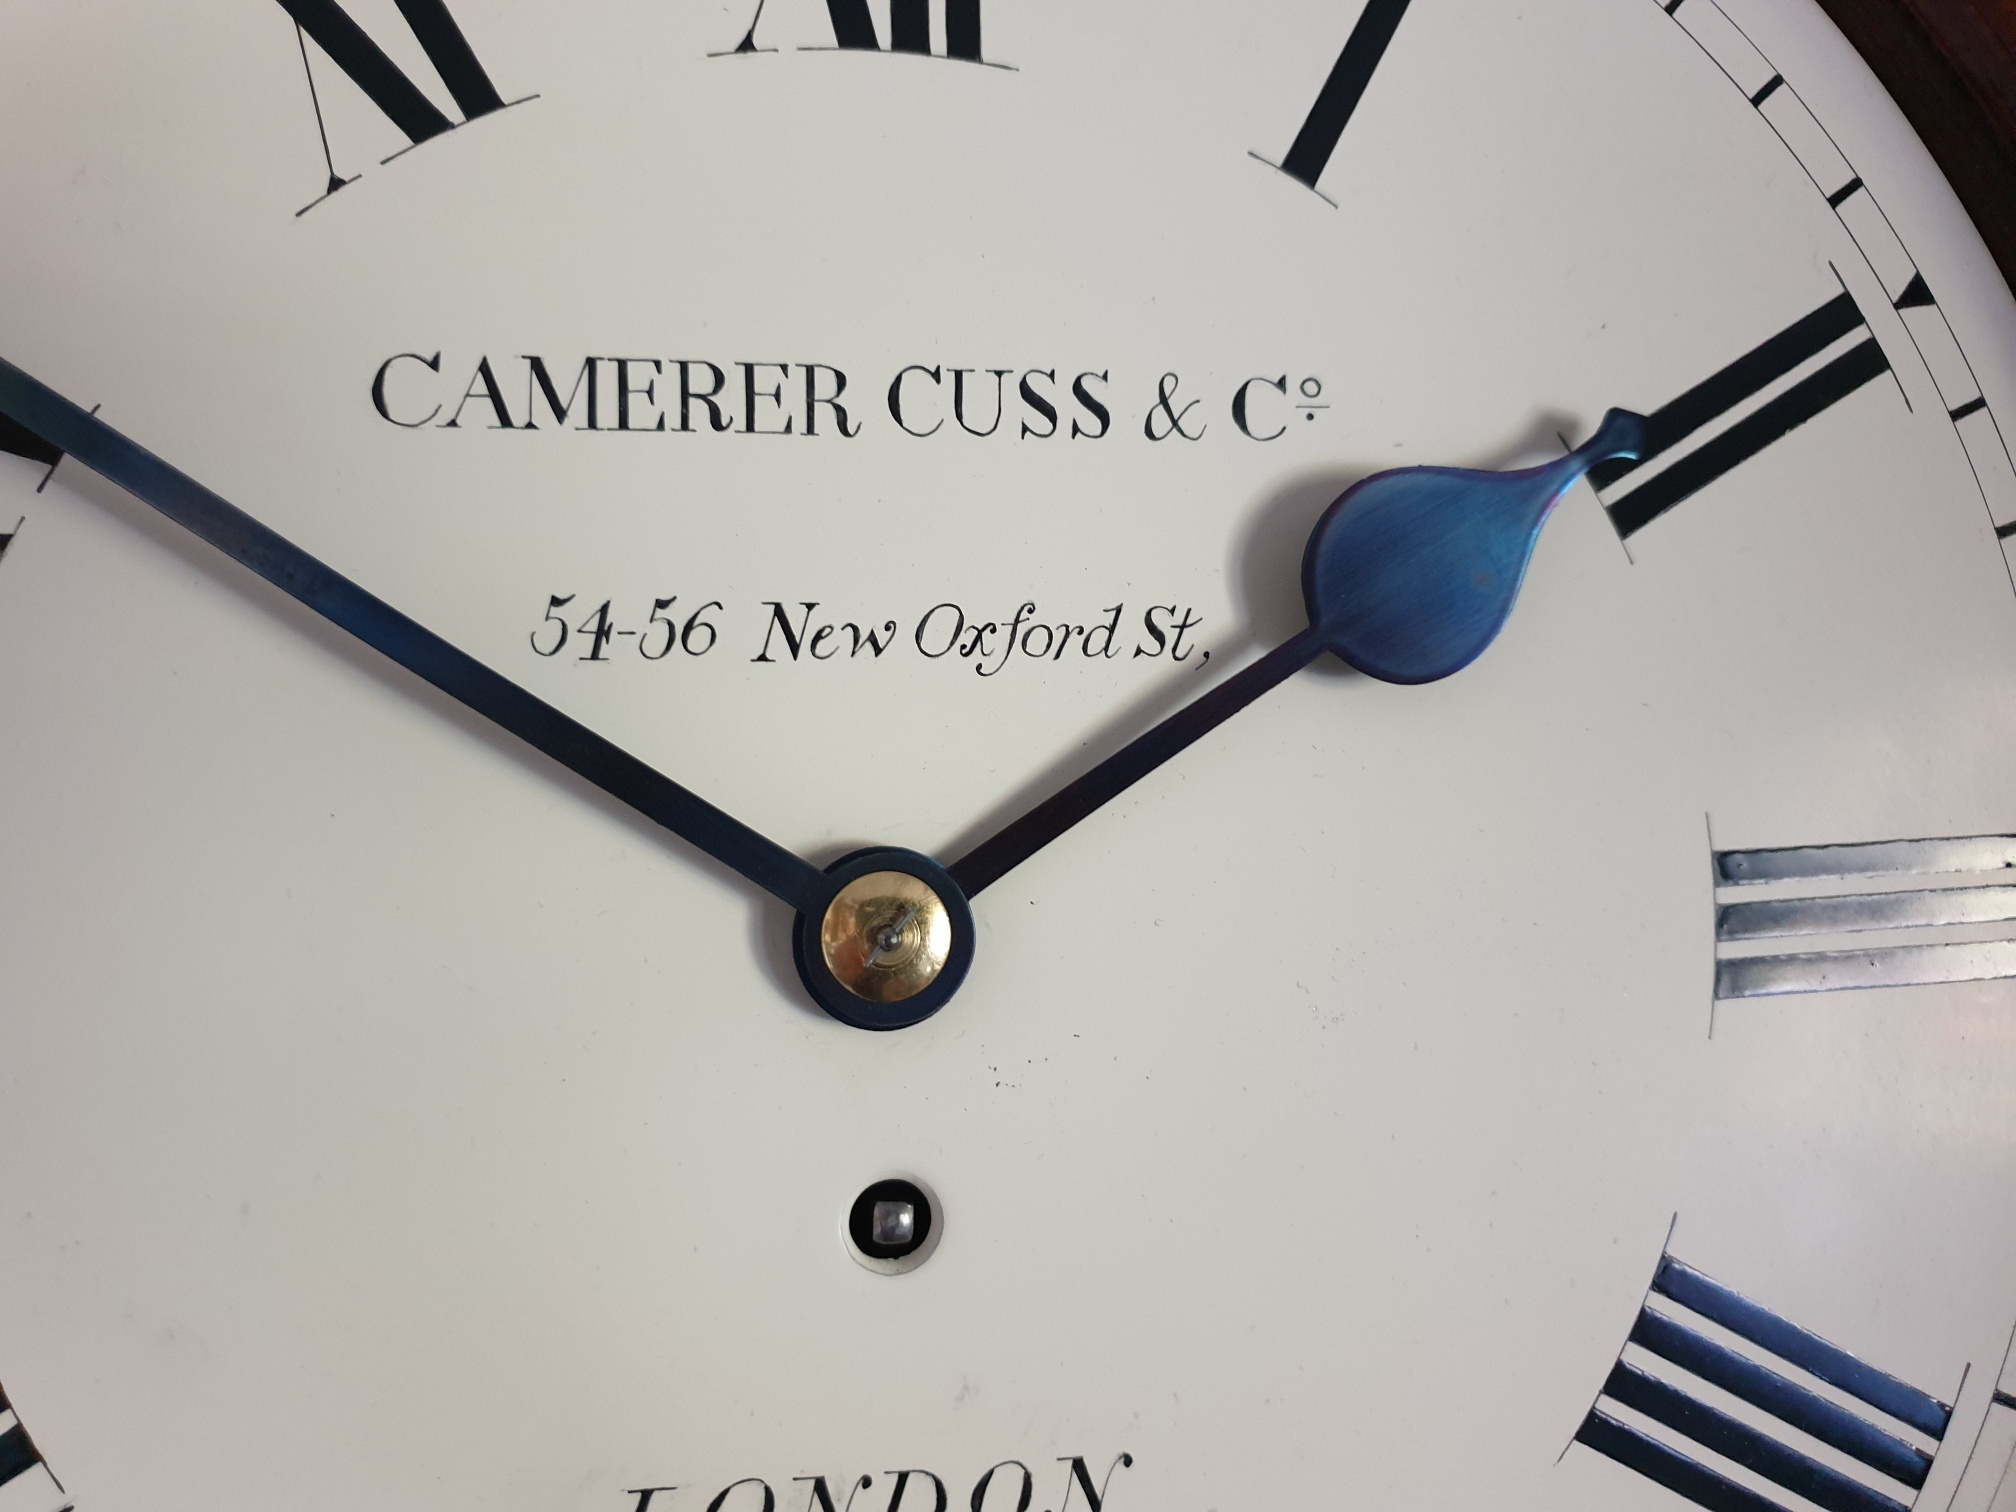 Camerer-Cuss-Fusee case detail